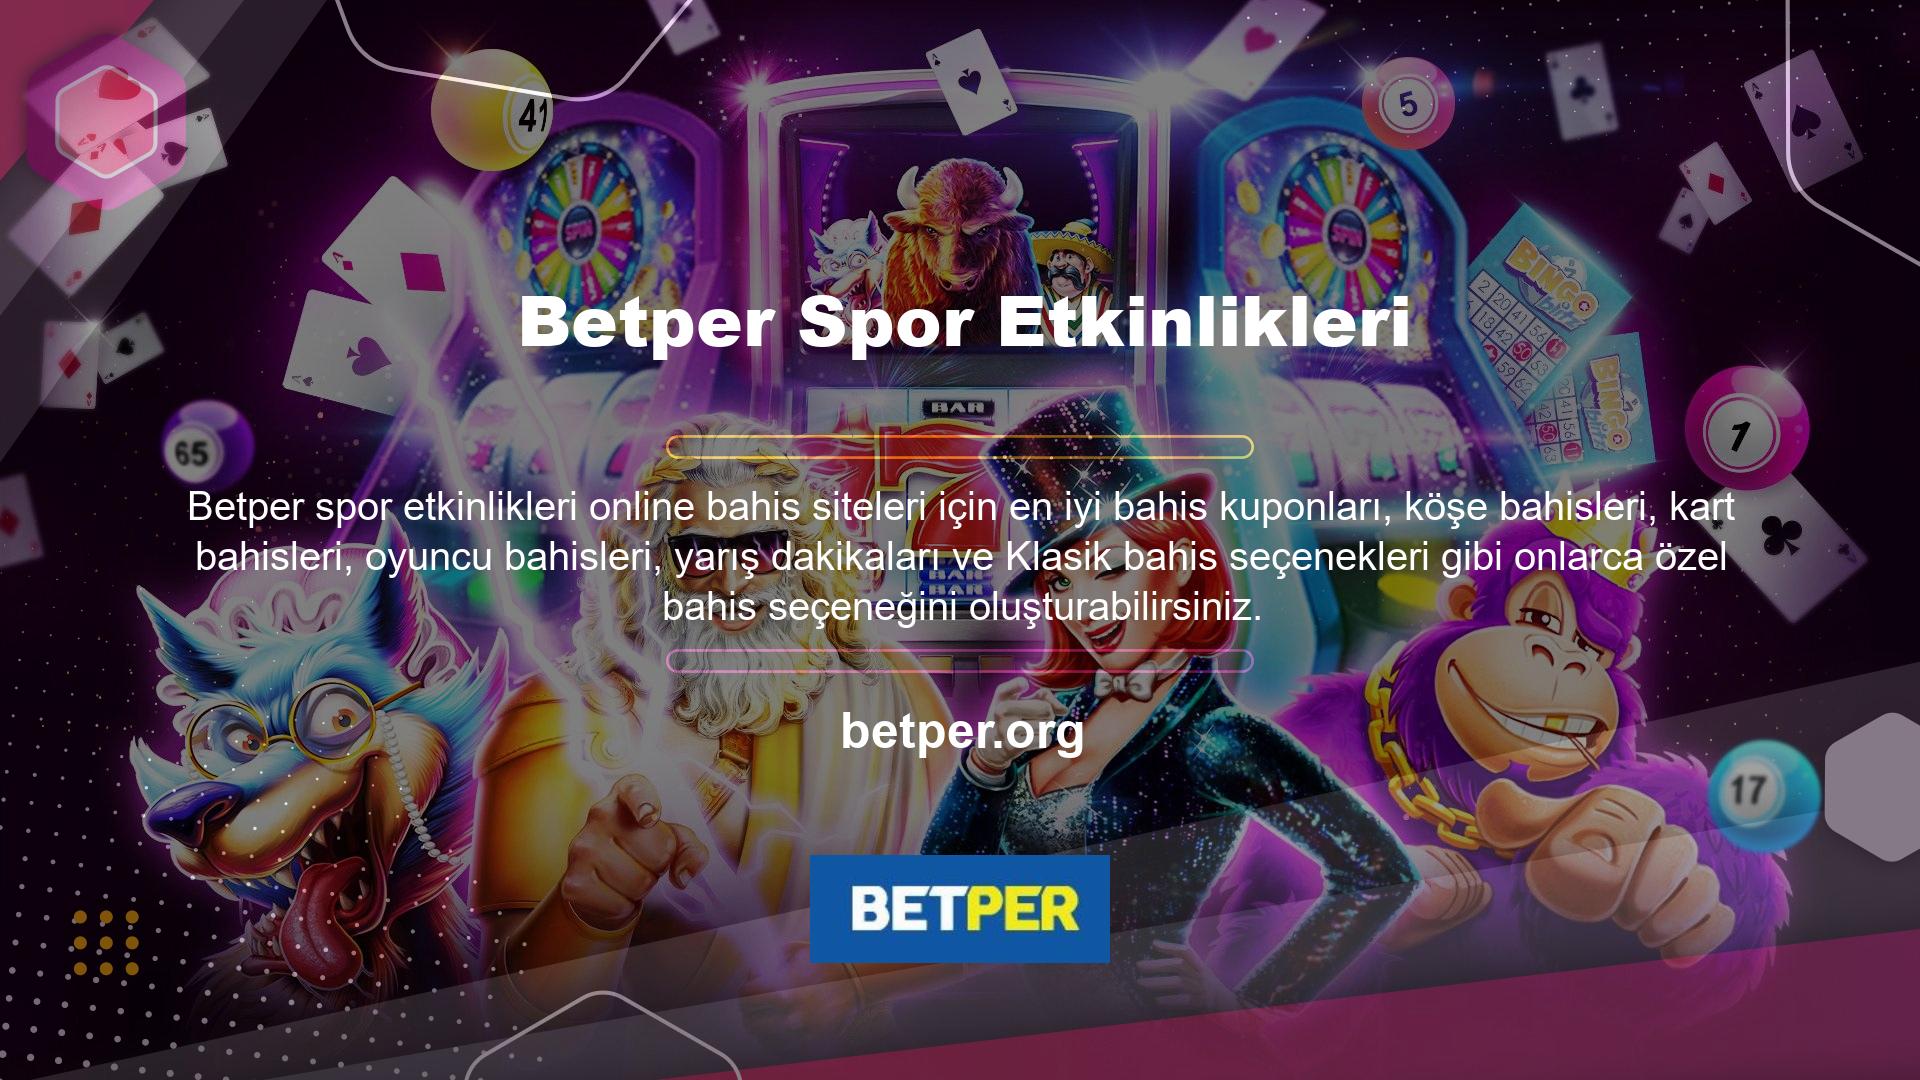 Betper, oyuncular için kapsamlı bahis bildirimleri ve bahis seçenekleri yayınlıyor ancak oyuncuları kaybetmeye zorlayan bahis bildirimlerini sınırlıyor